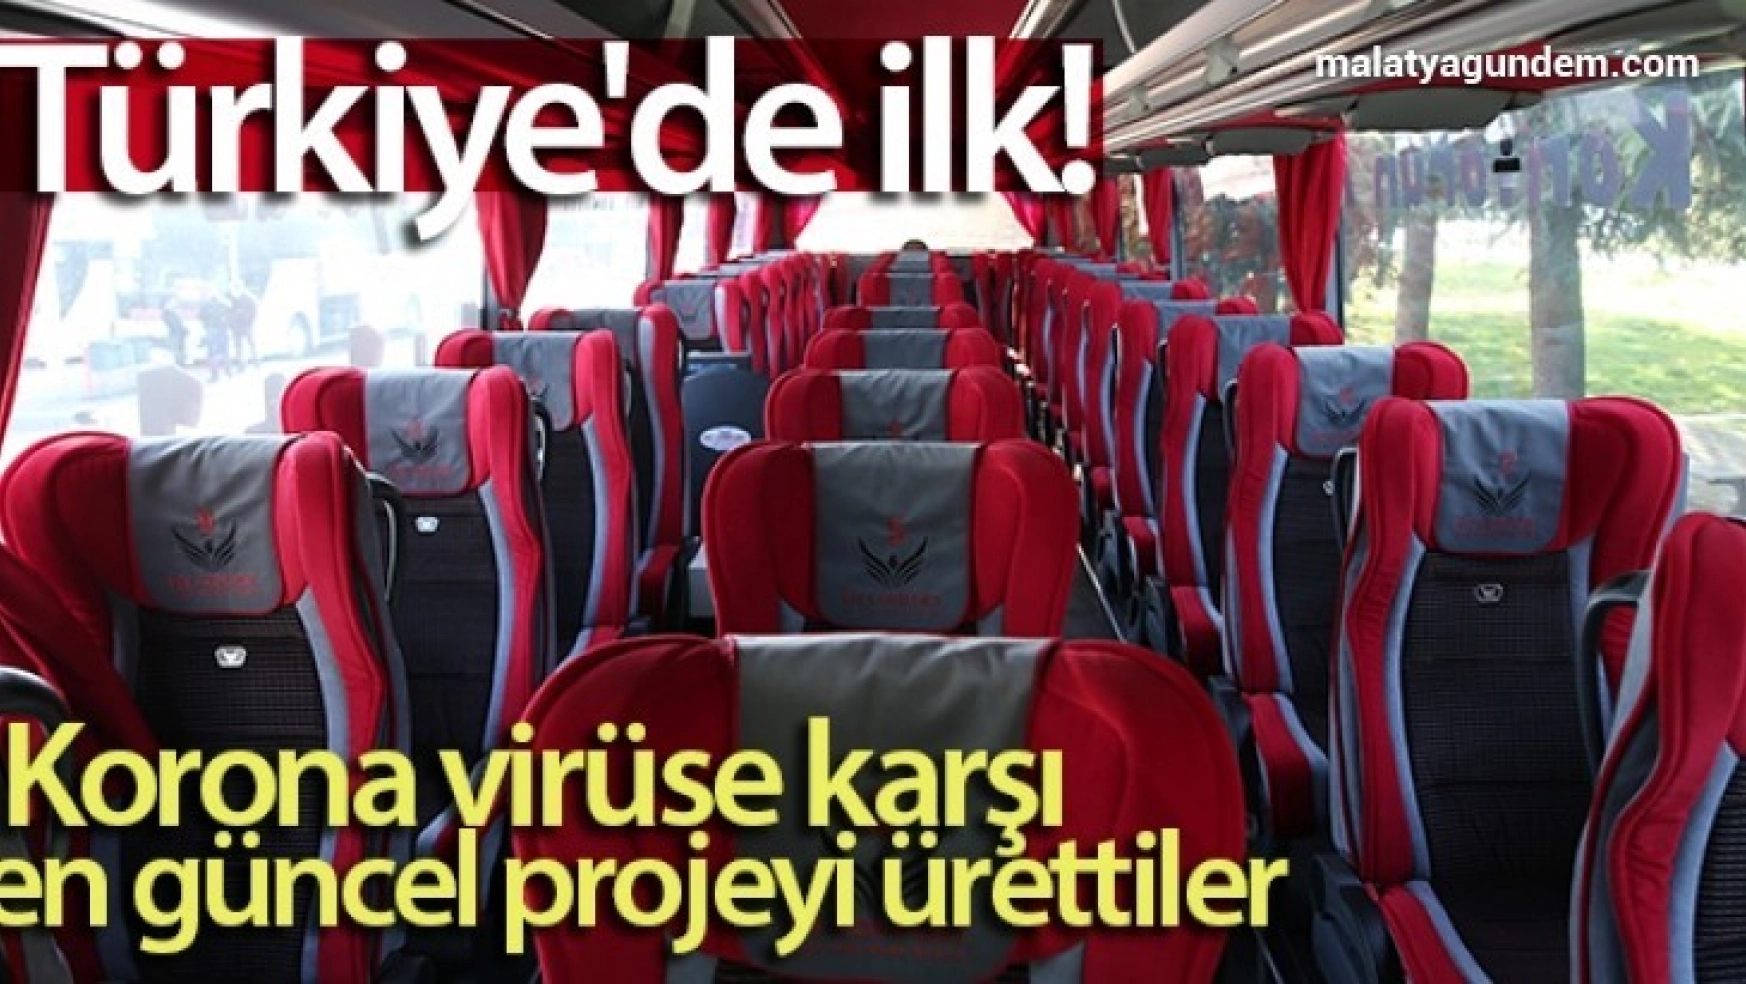 Türkiye'de ilk...Yolcu otobüslerinde korona virüse karşı en güncel projeyi ürettiler